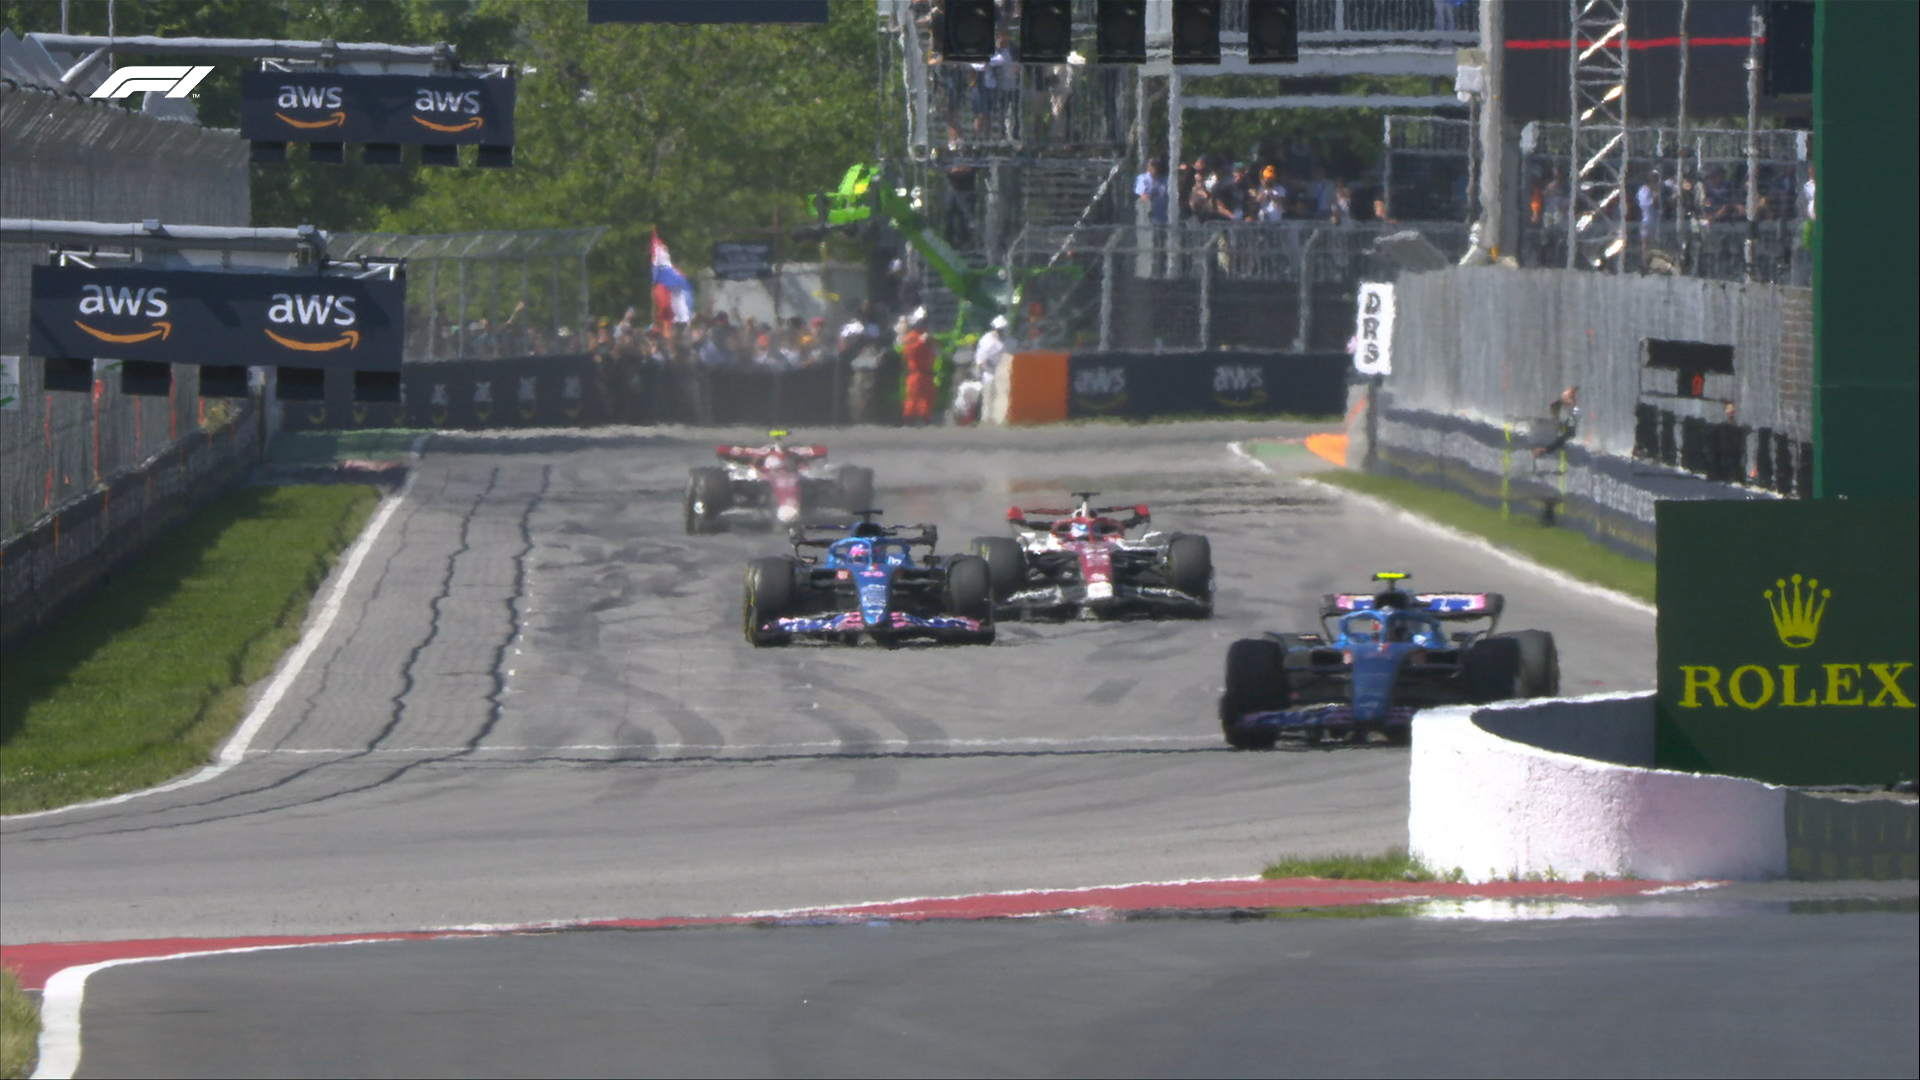 Απόλυτος κυρίαρχος ο Max Verstappen στο Grand Prix του Καναδά- Ο Leclerc ξεκίνησε από την 19η θέση και τερμάτισε πέμπτος